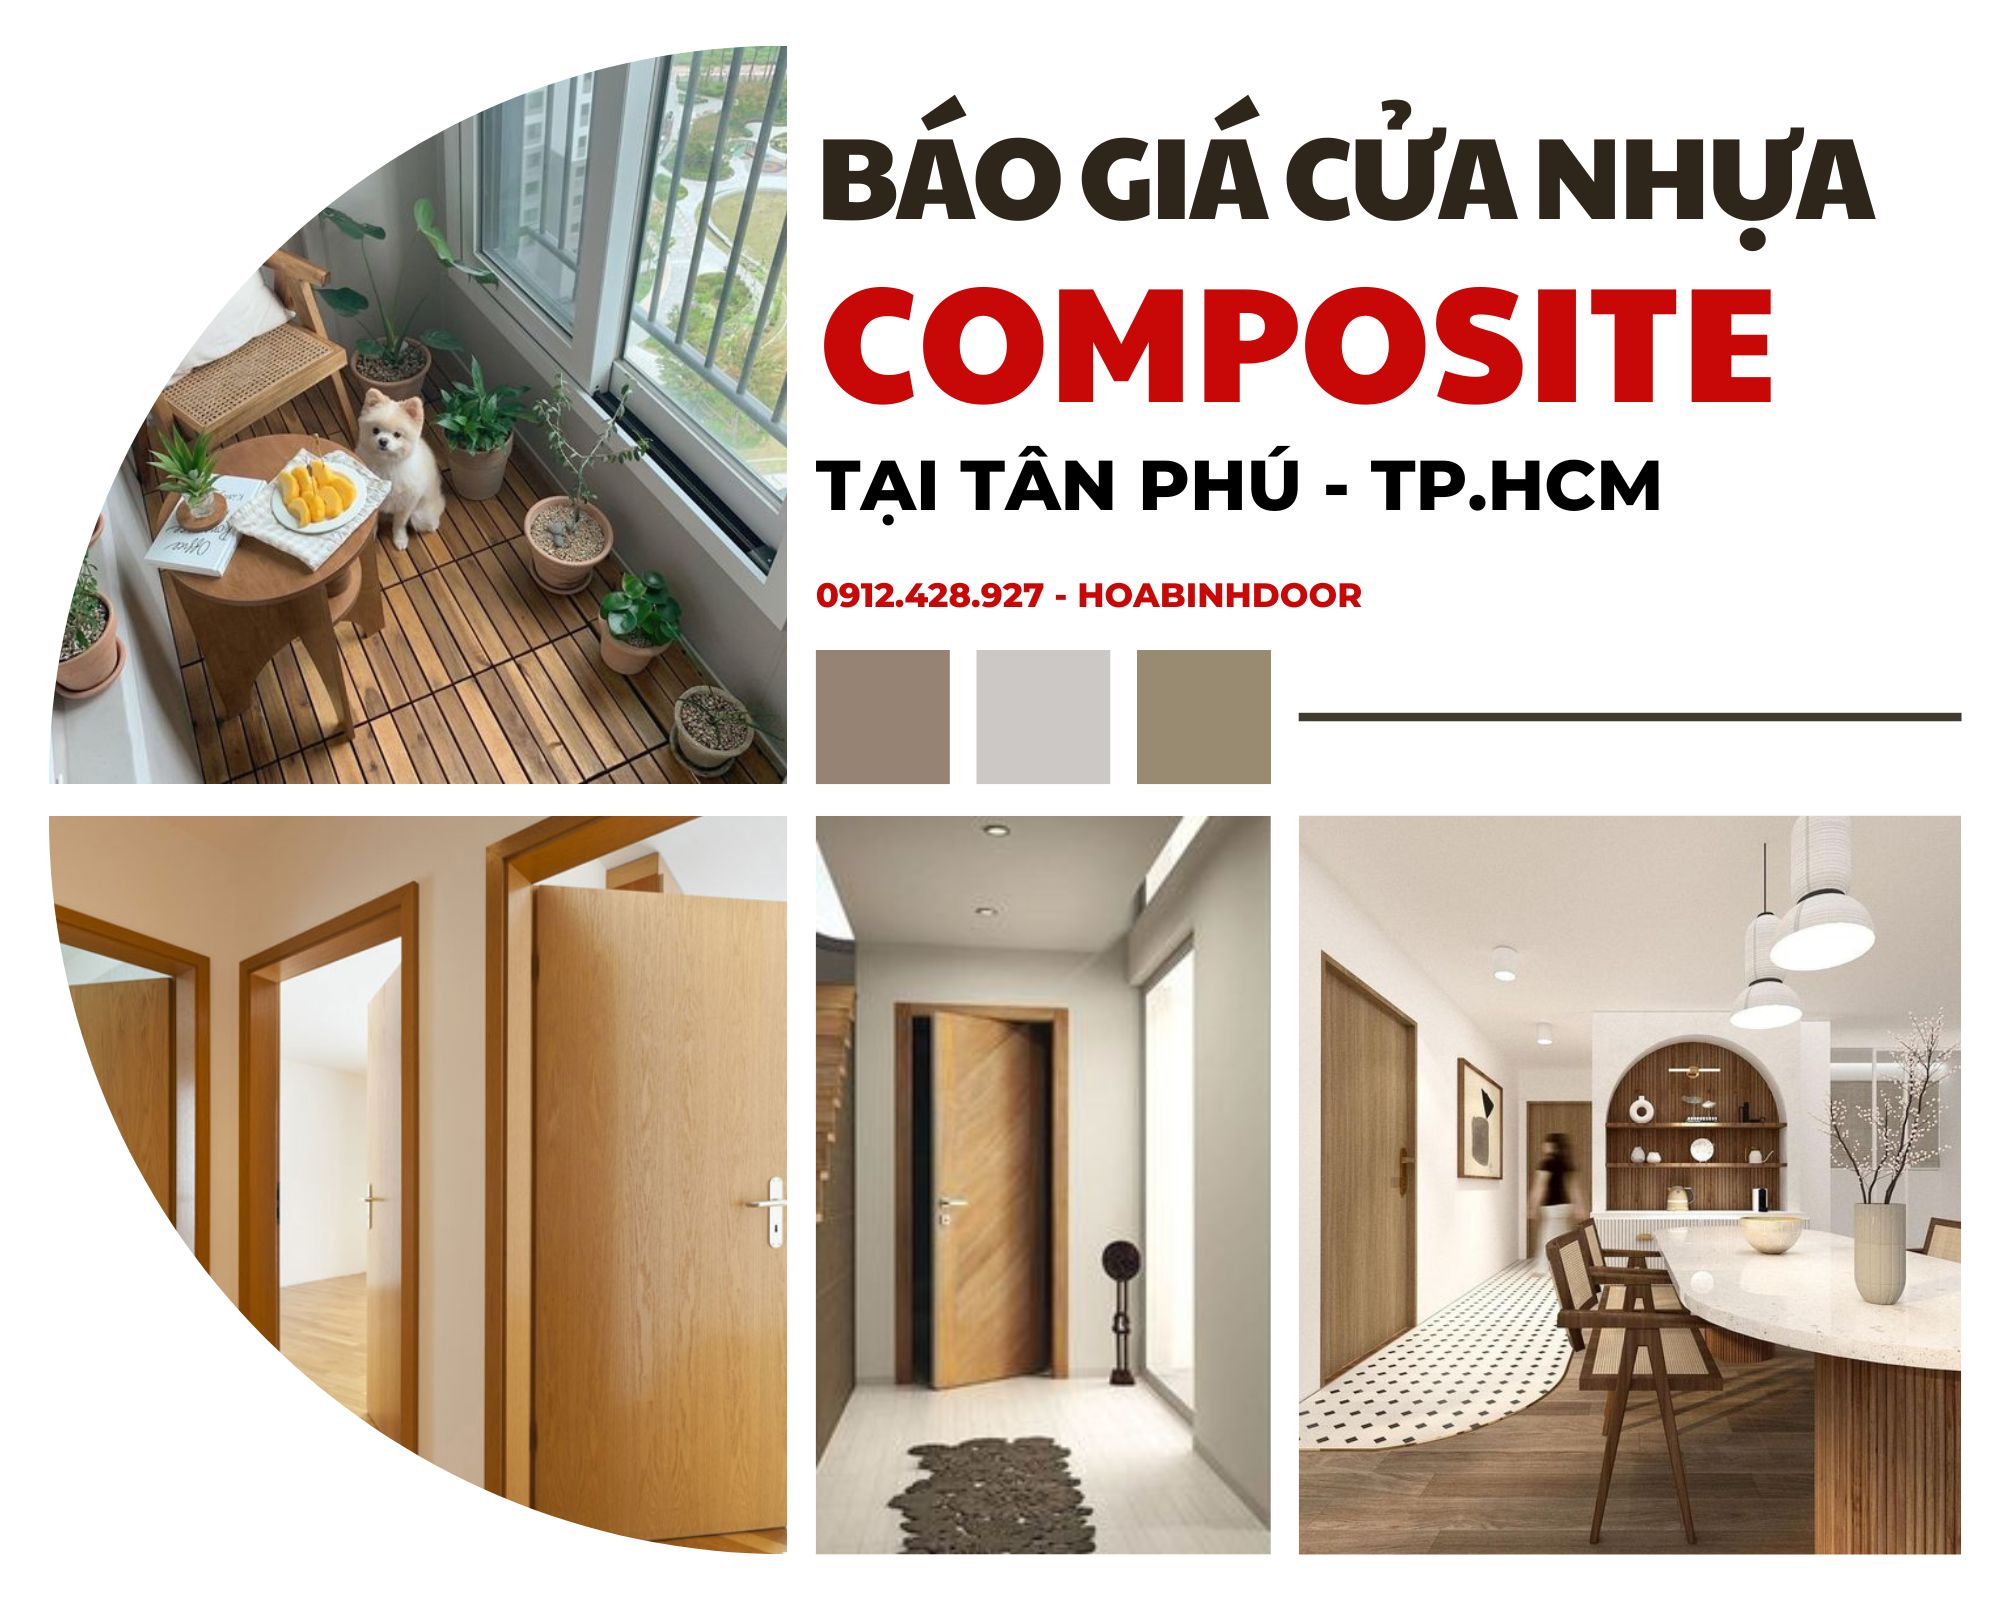 Cửa nhựa Composite tại Tân Phú | Giá từ 3.000.000 VNĐ/Bộ